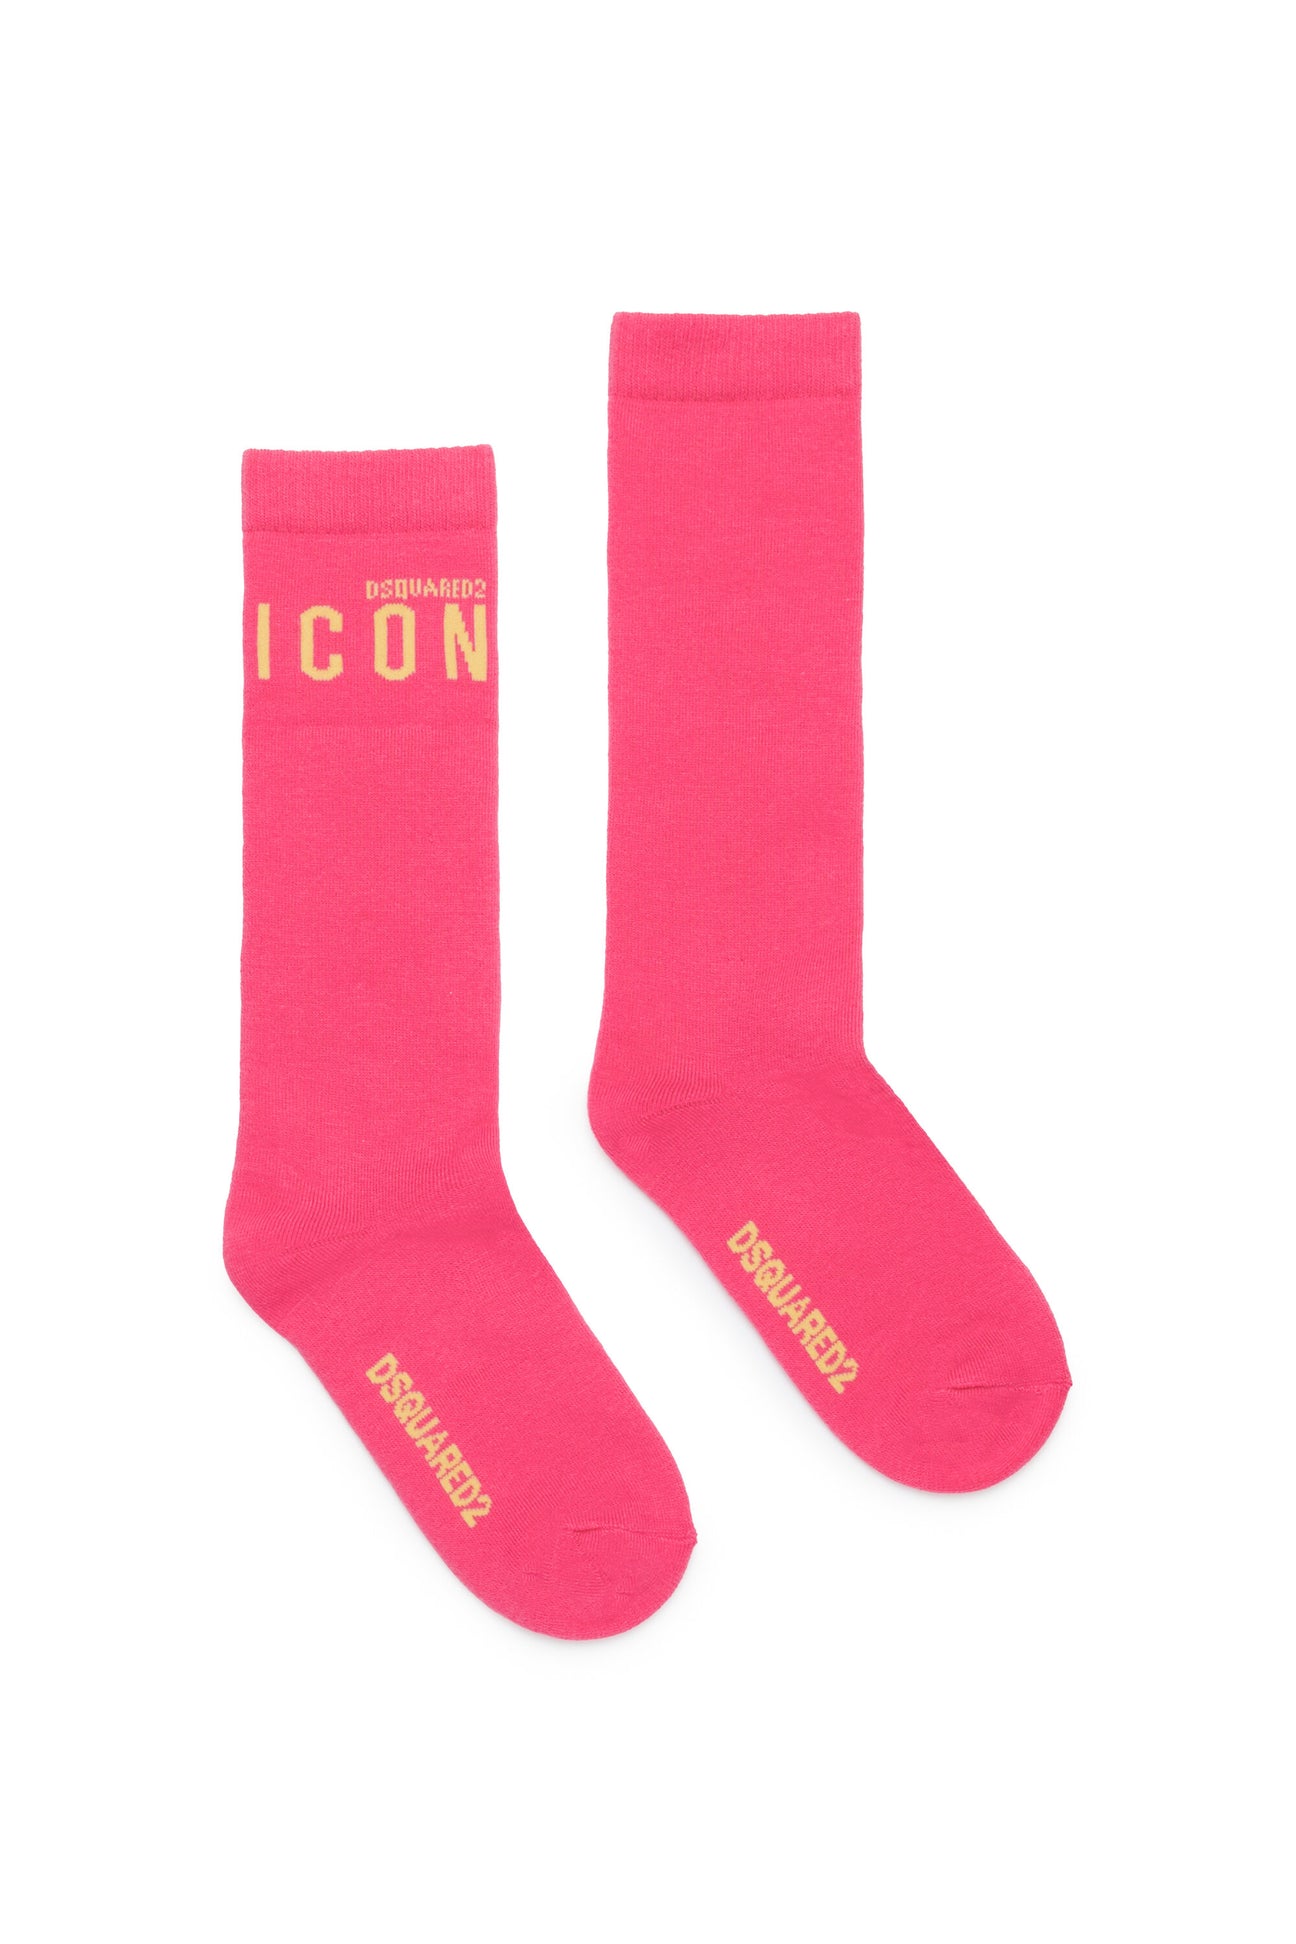 Calzini in cotone con logo ICON 